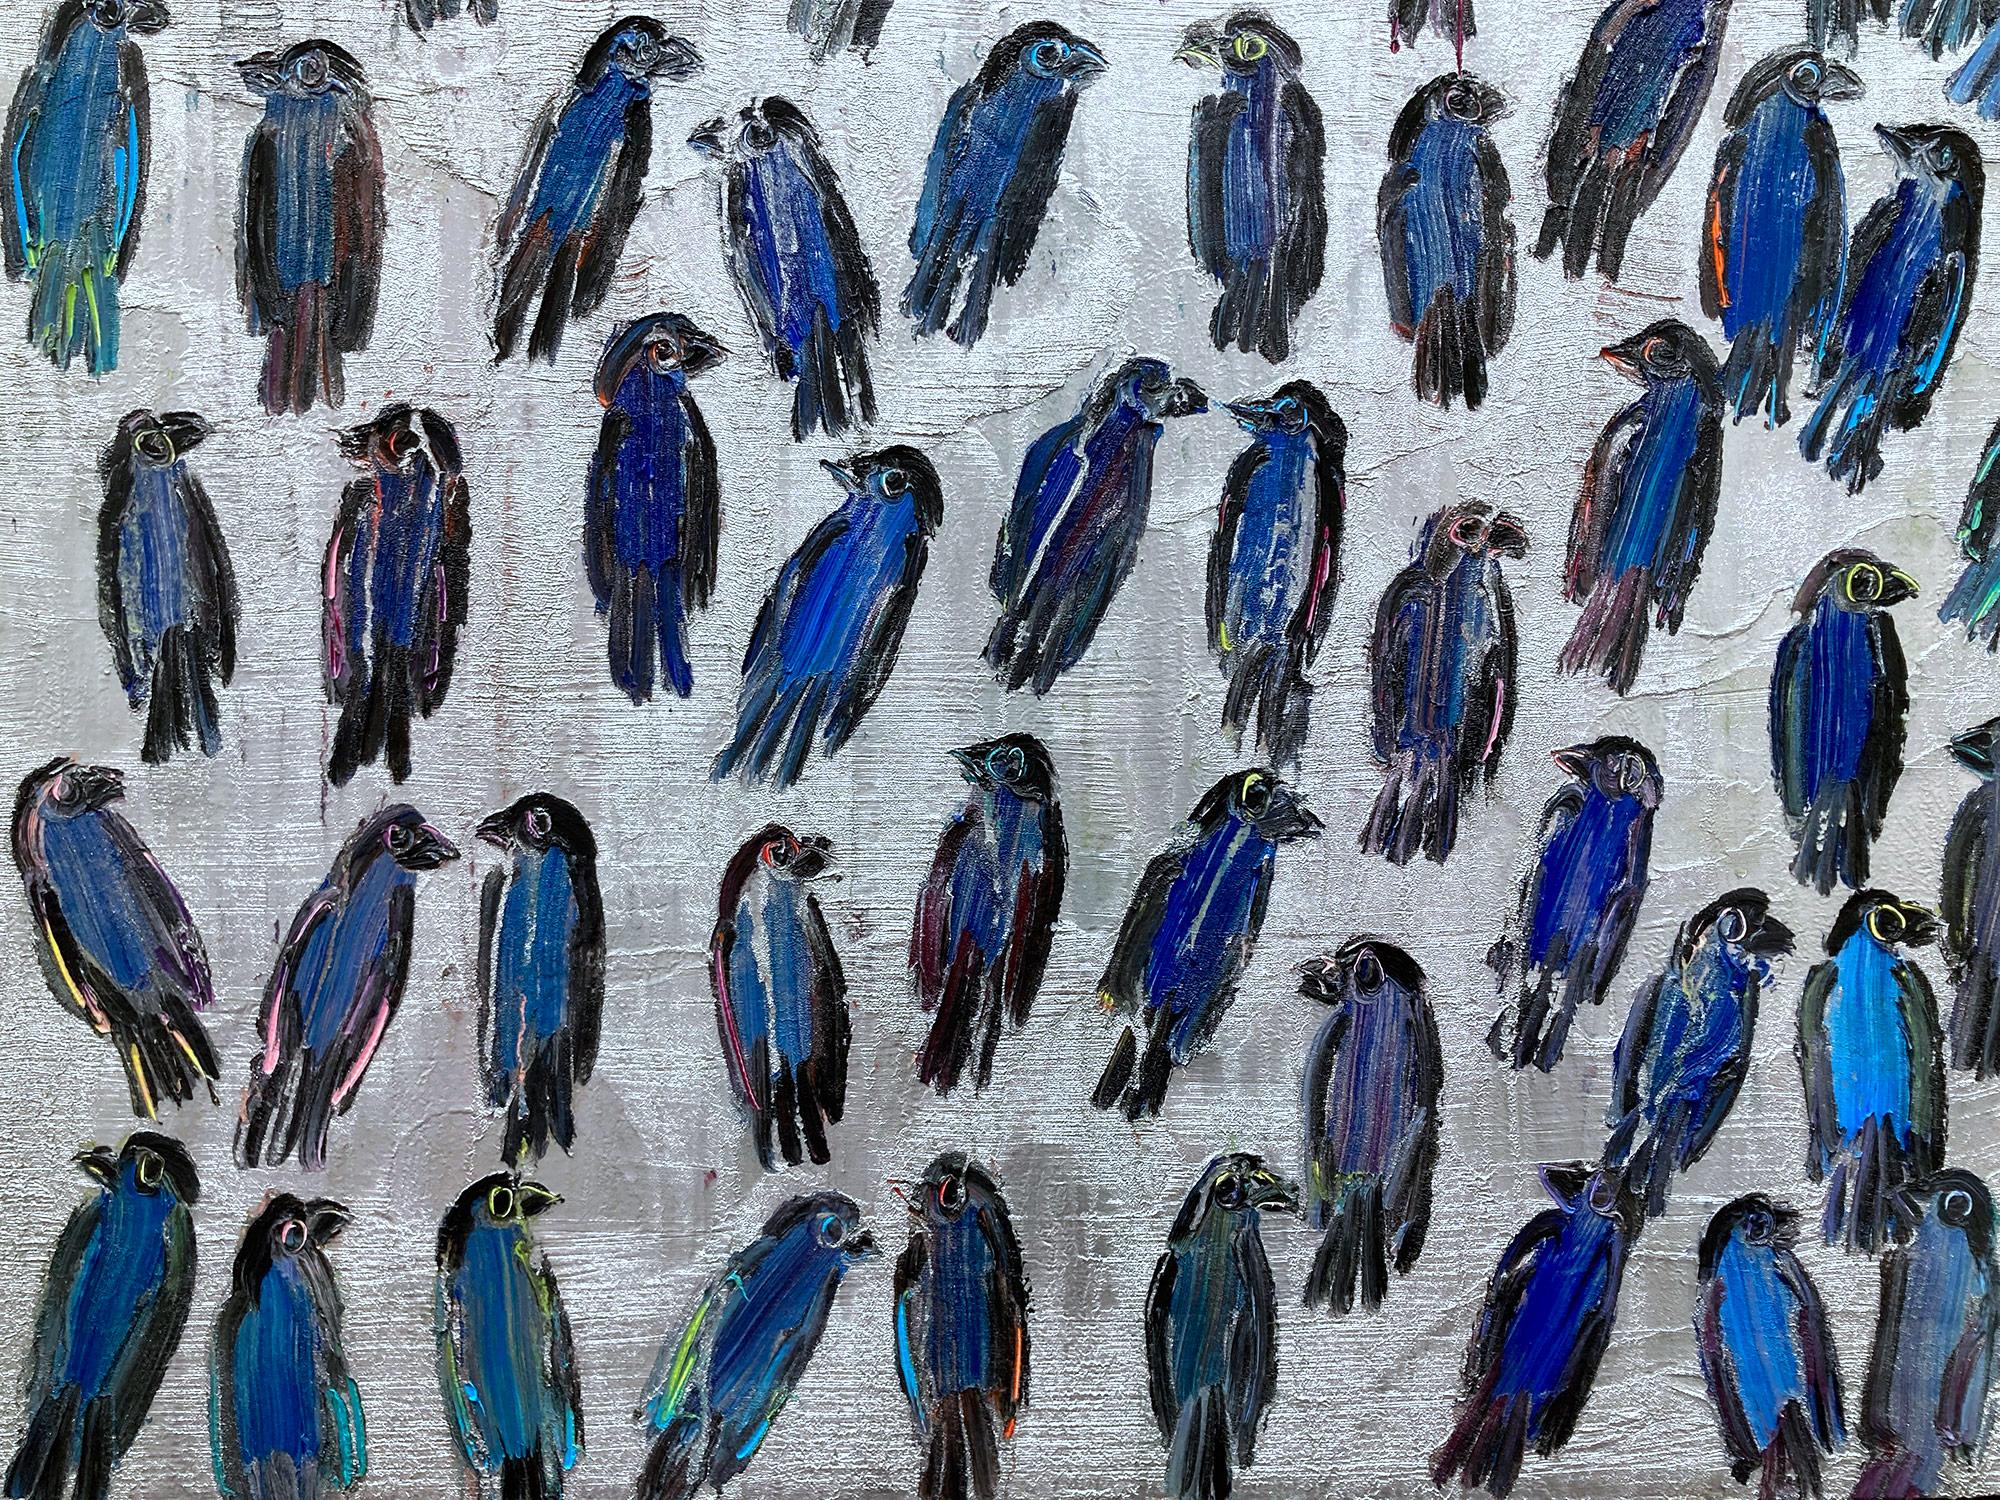 Eine wunderbare Komposition eines der ikonischsten Finkenmotive von Slonem. Der dicke Farbauftrag ist deutlich zu erkennen, wenn er Schicht um Schicht Ölfarbe auf einen silberreichen Hintergrund aufträgt. Dann zeichnet er diese skurrilen Vögel, die